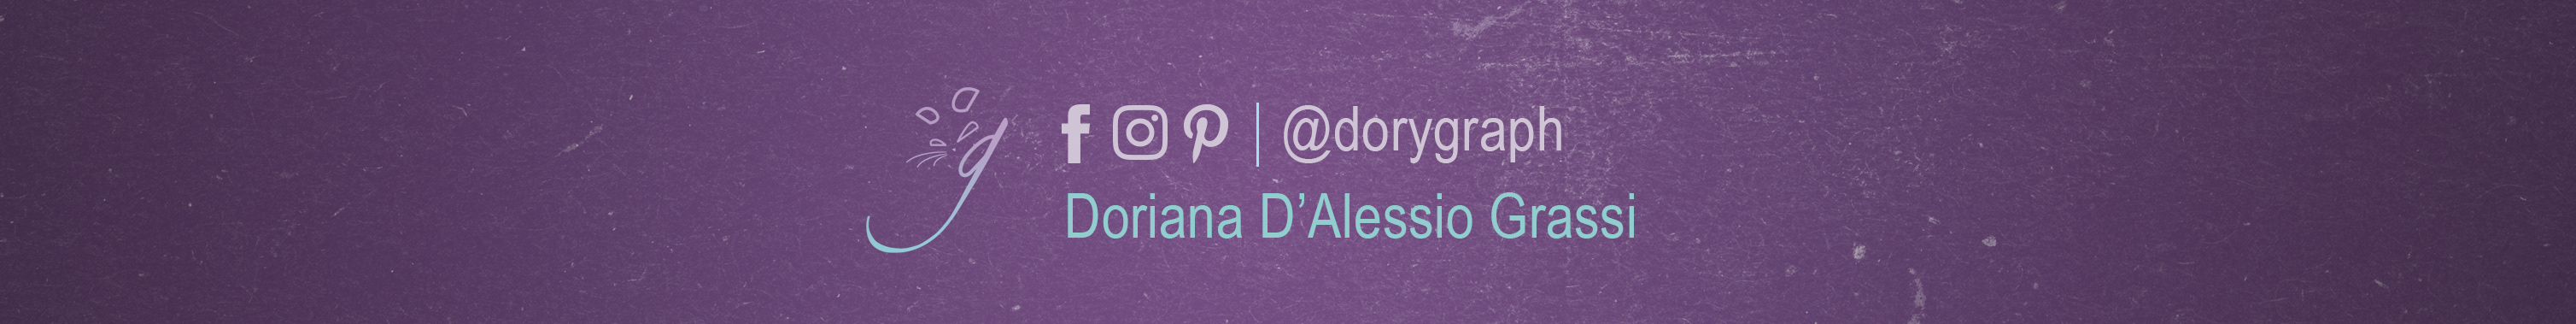 Doriana D'Alessio Grassi's profile banner